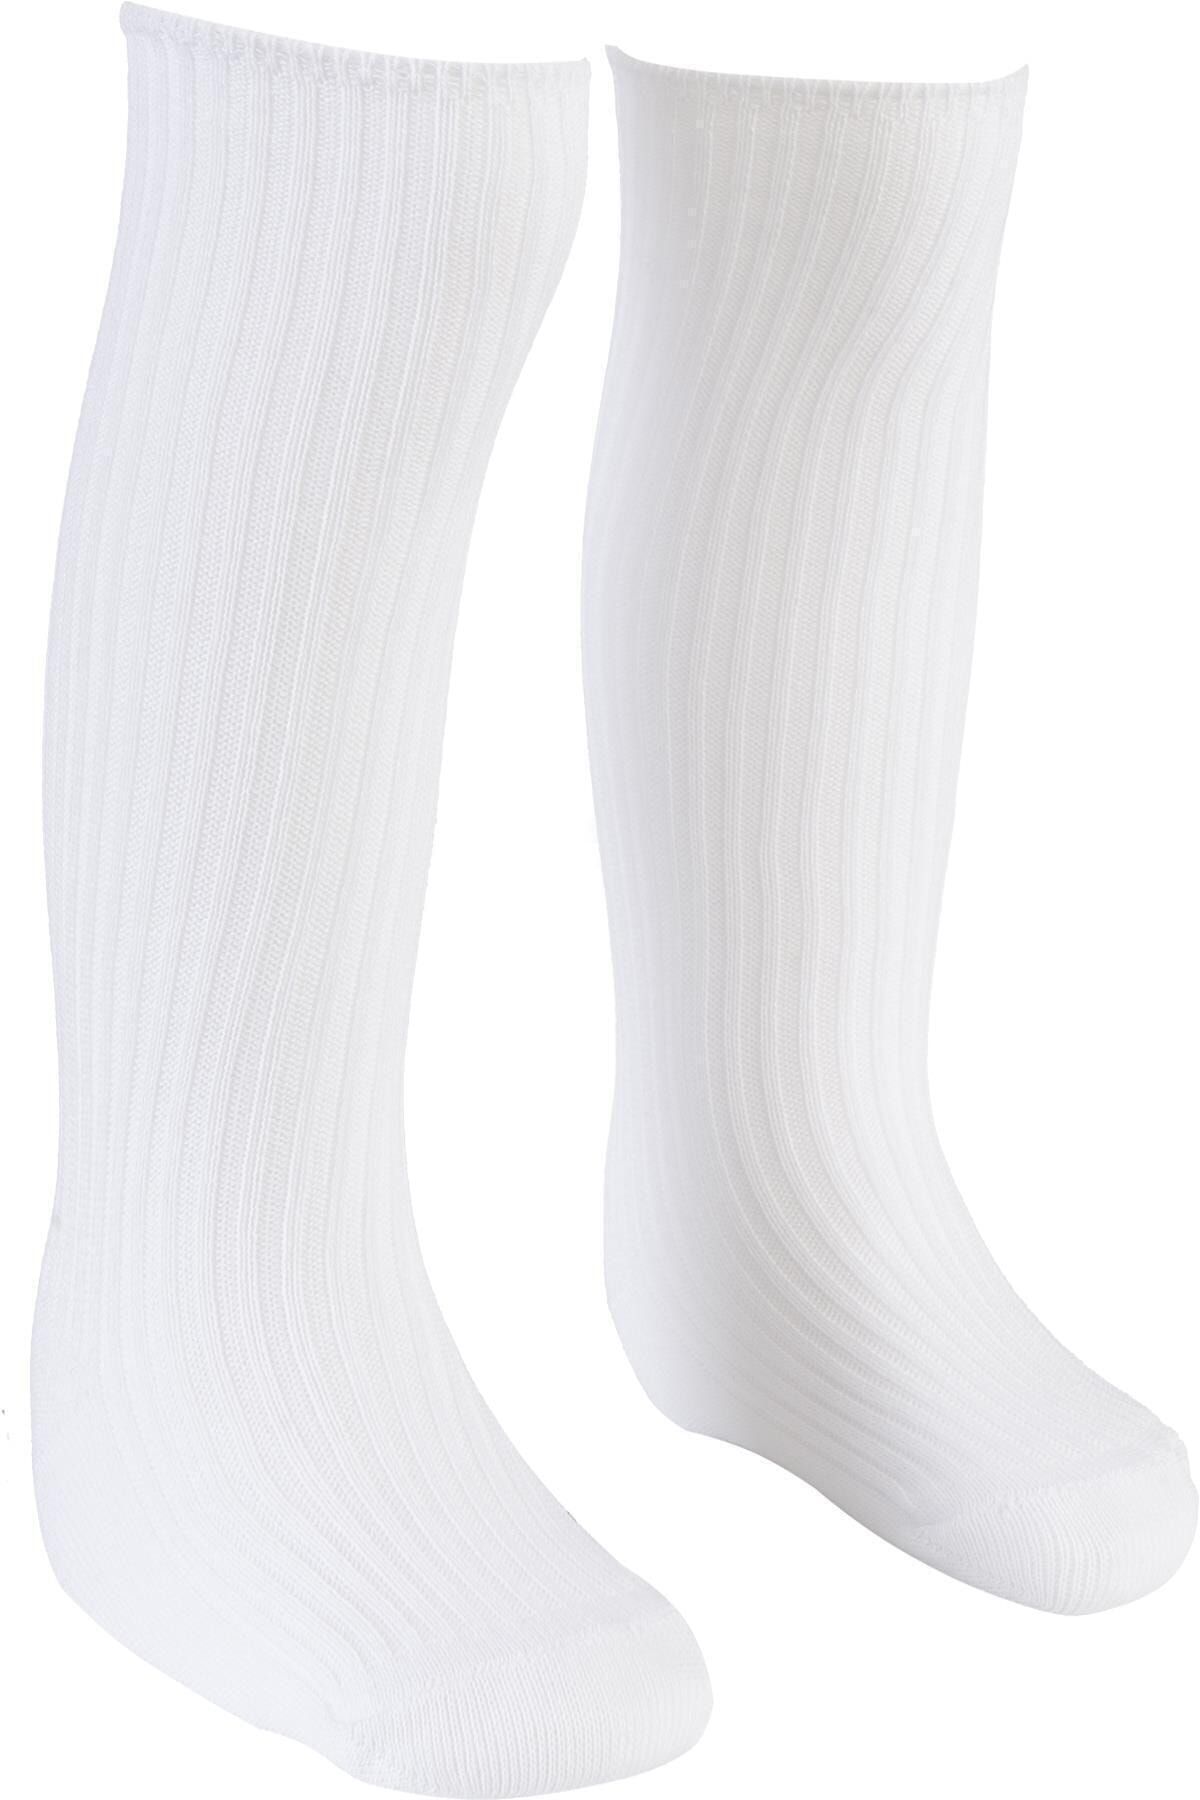 BEBEĞİME ÇORAP Beyaz 0-1 Yaş Dizaltı Çorap Kız-erkek Bebek / Kız- Erkek Çocuk